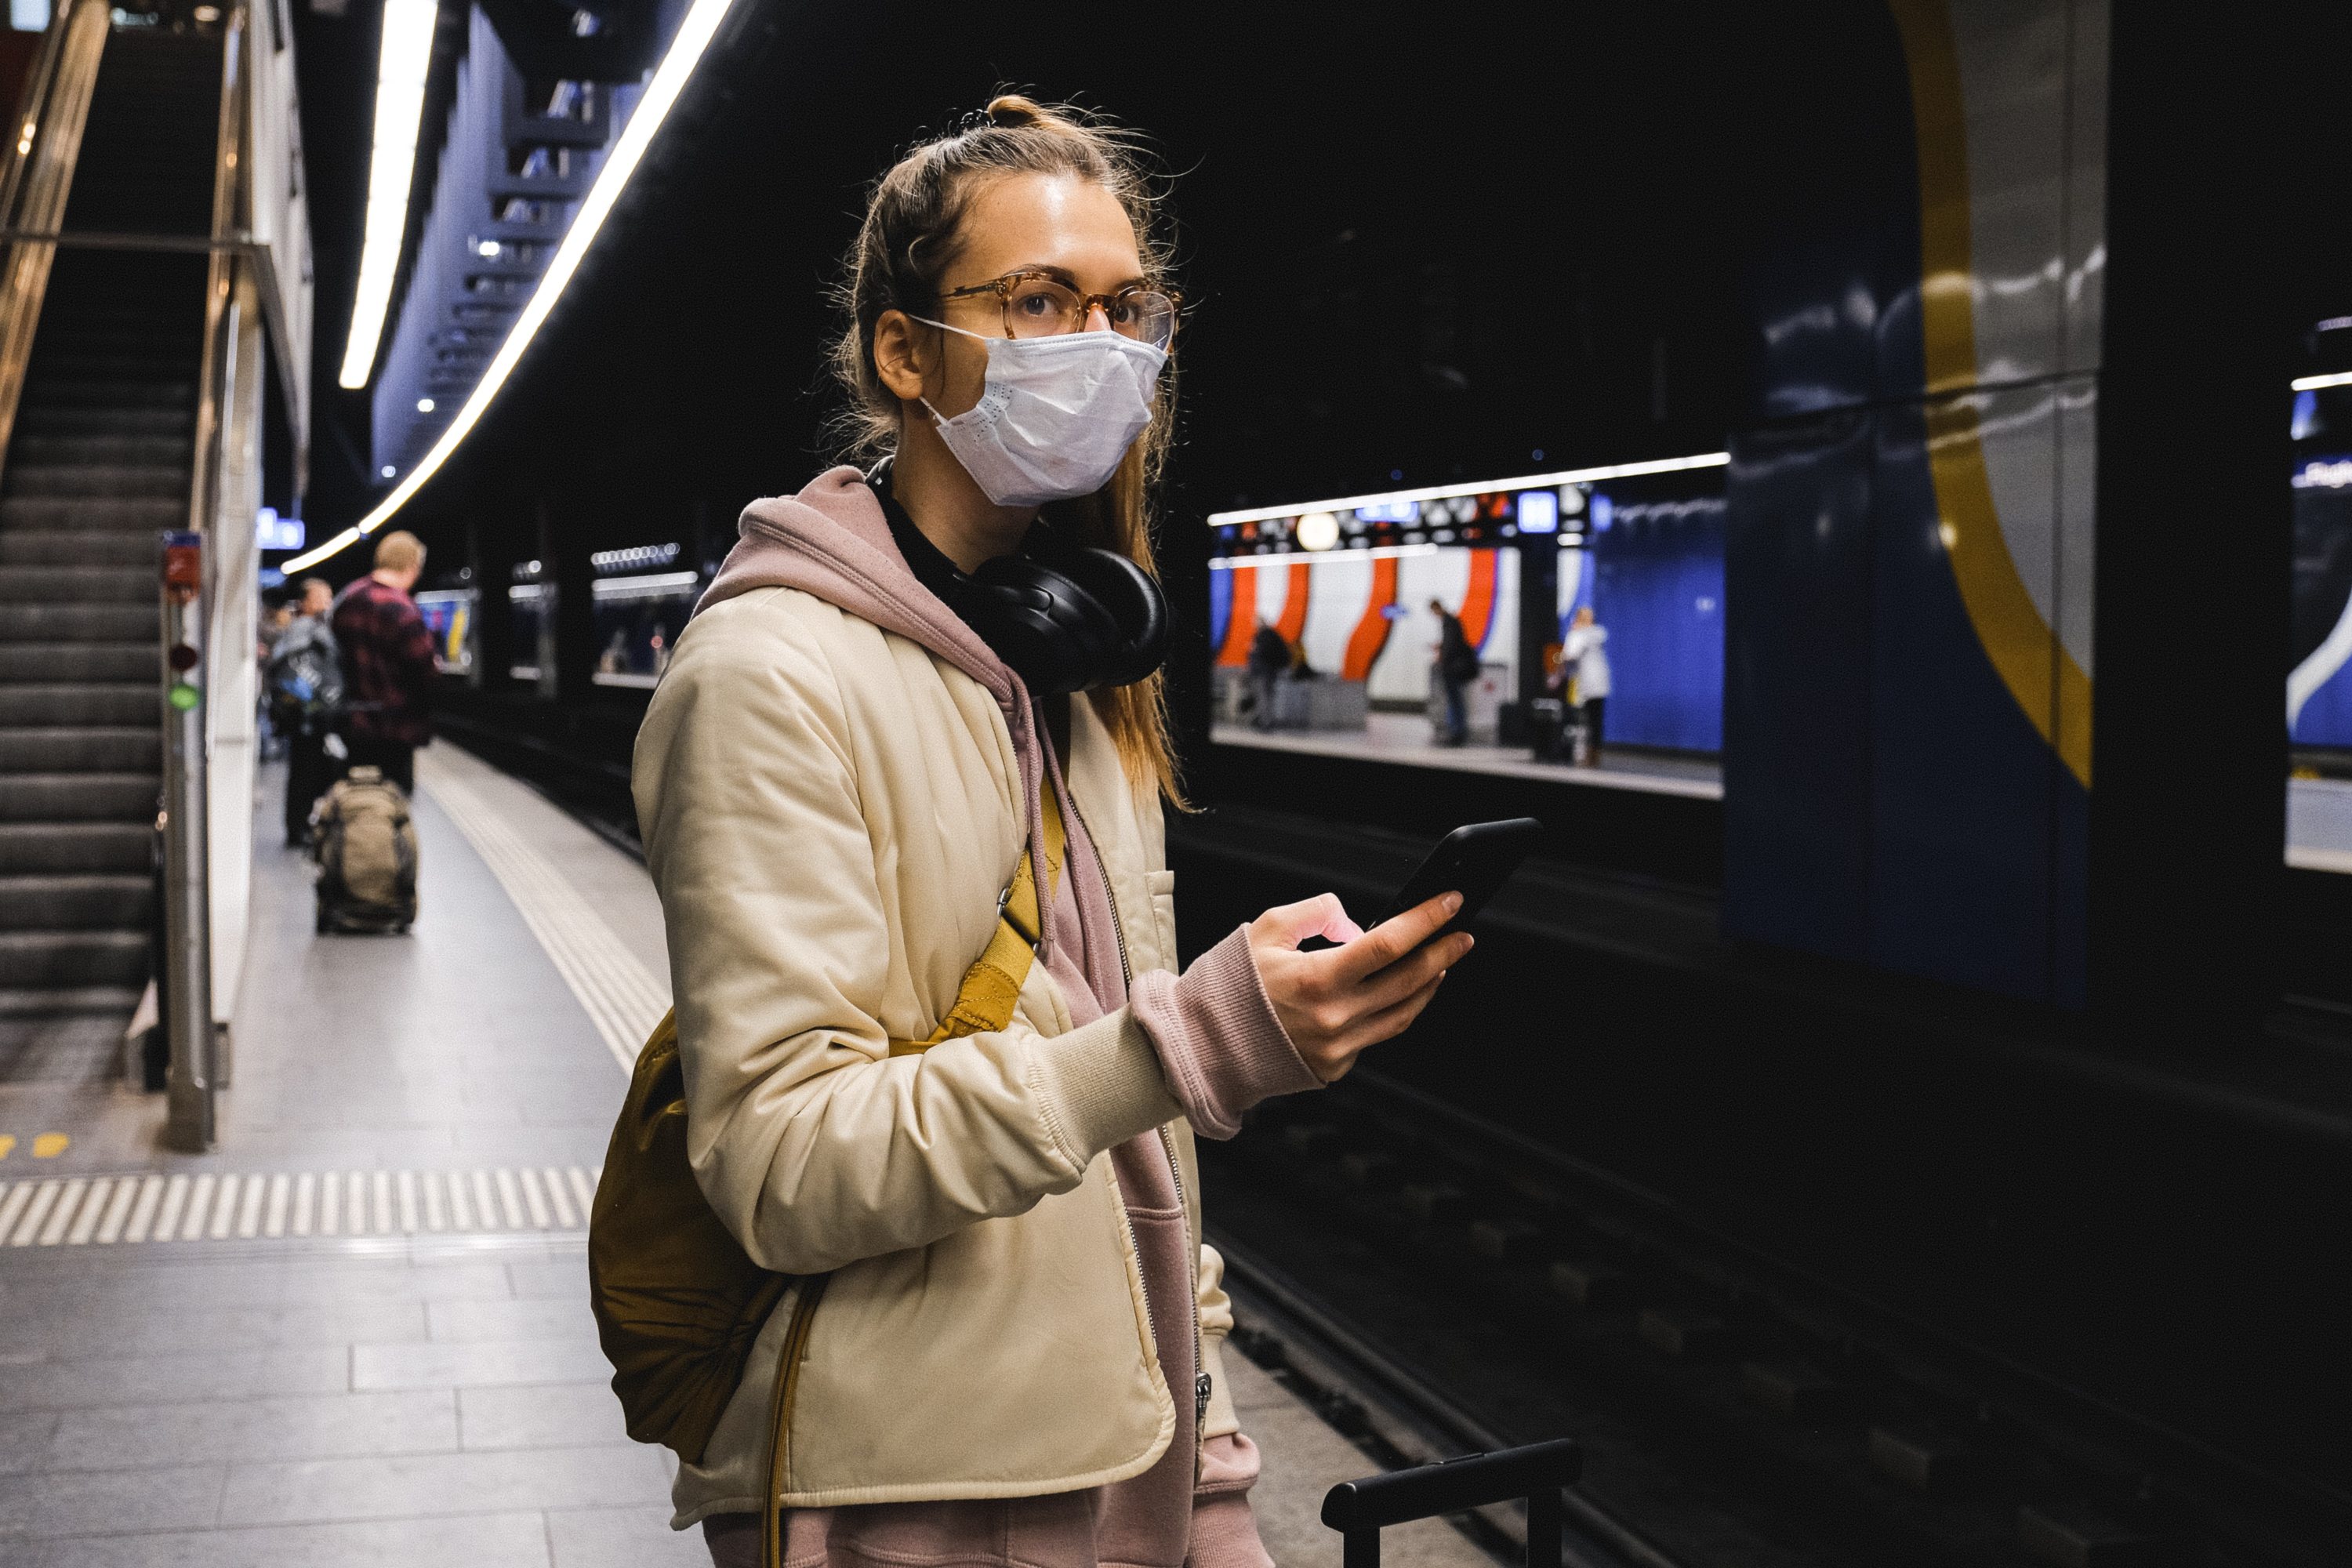 Máscaras ainda são obrigatórias em transportes públicos (Foto: Anna Shvets/Pexels)